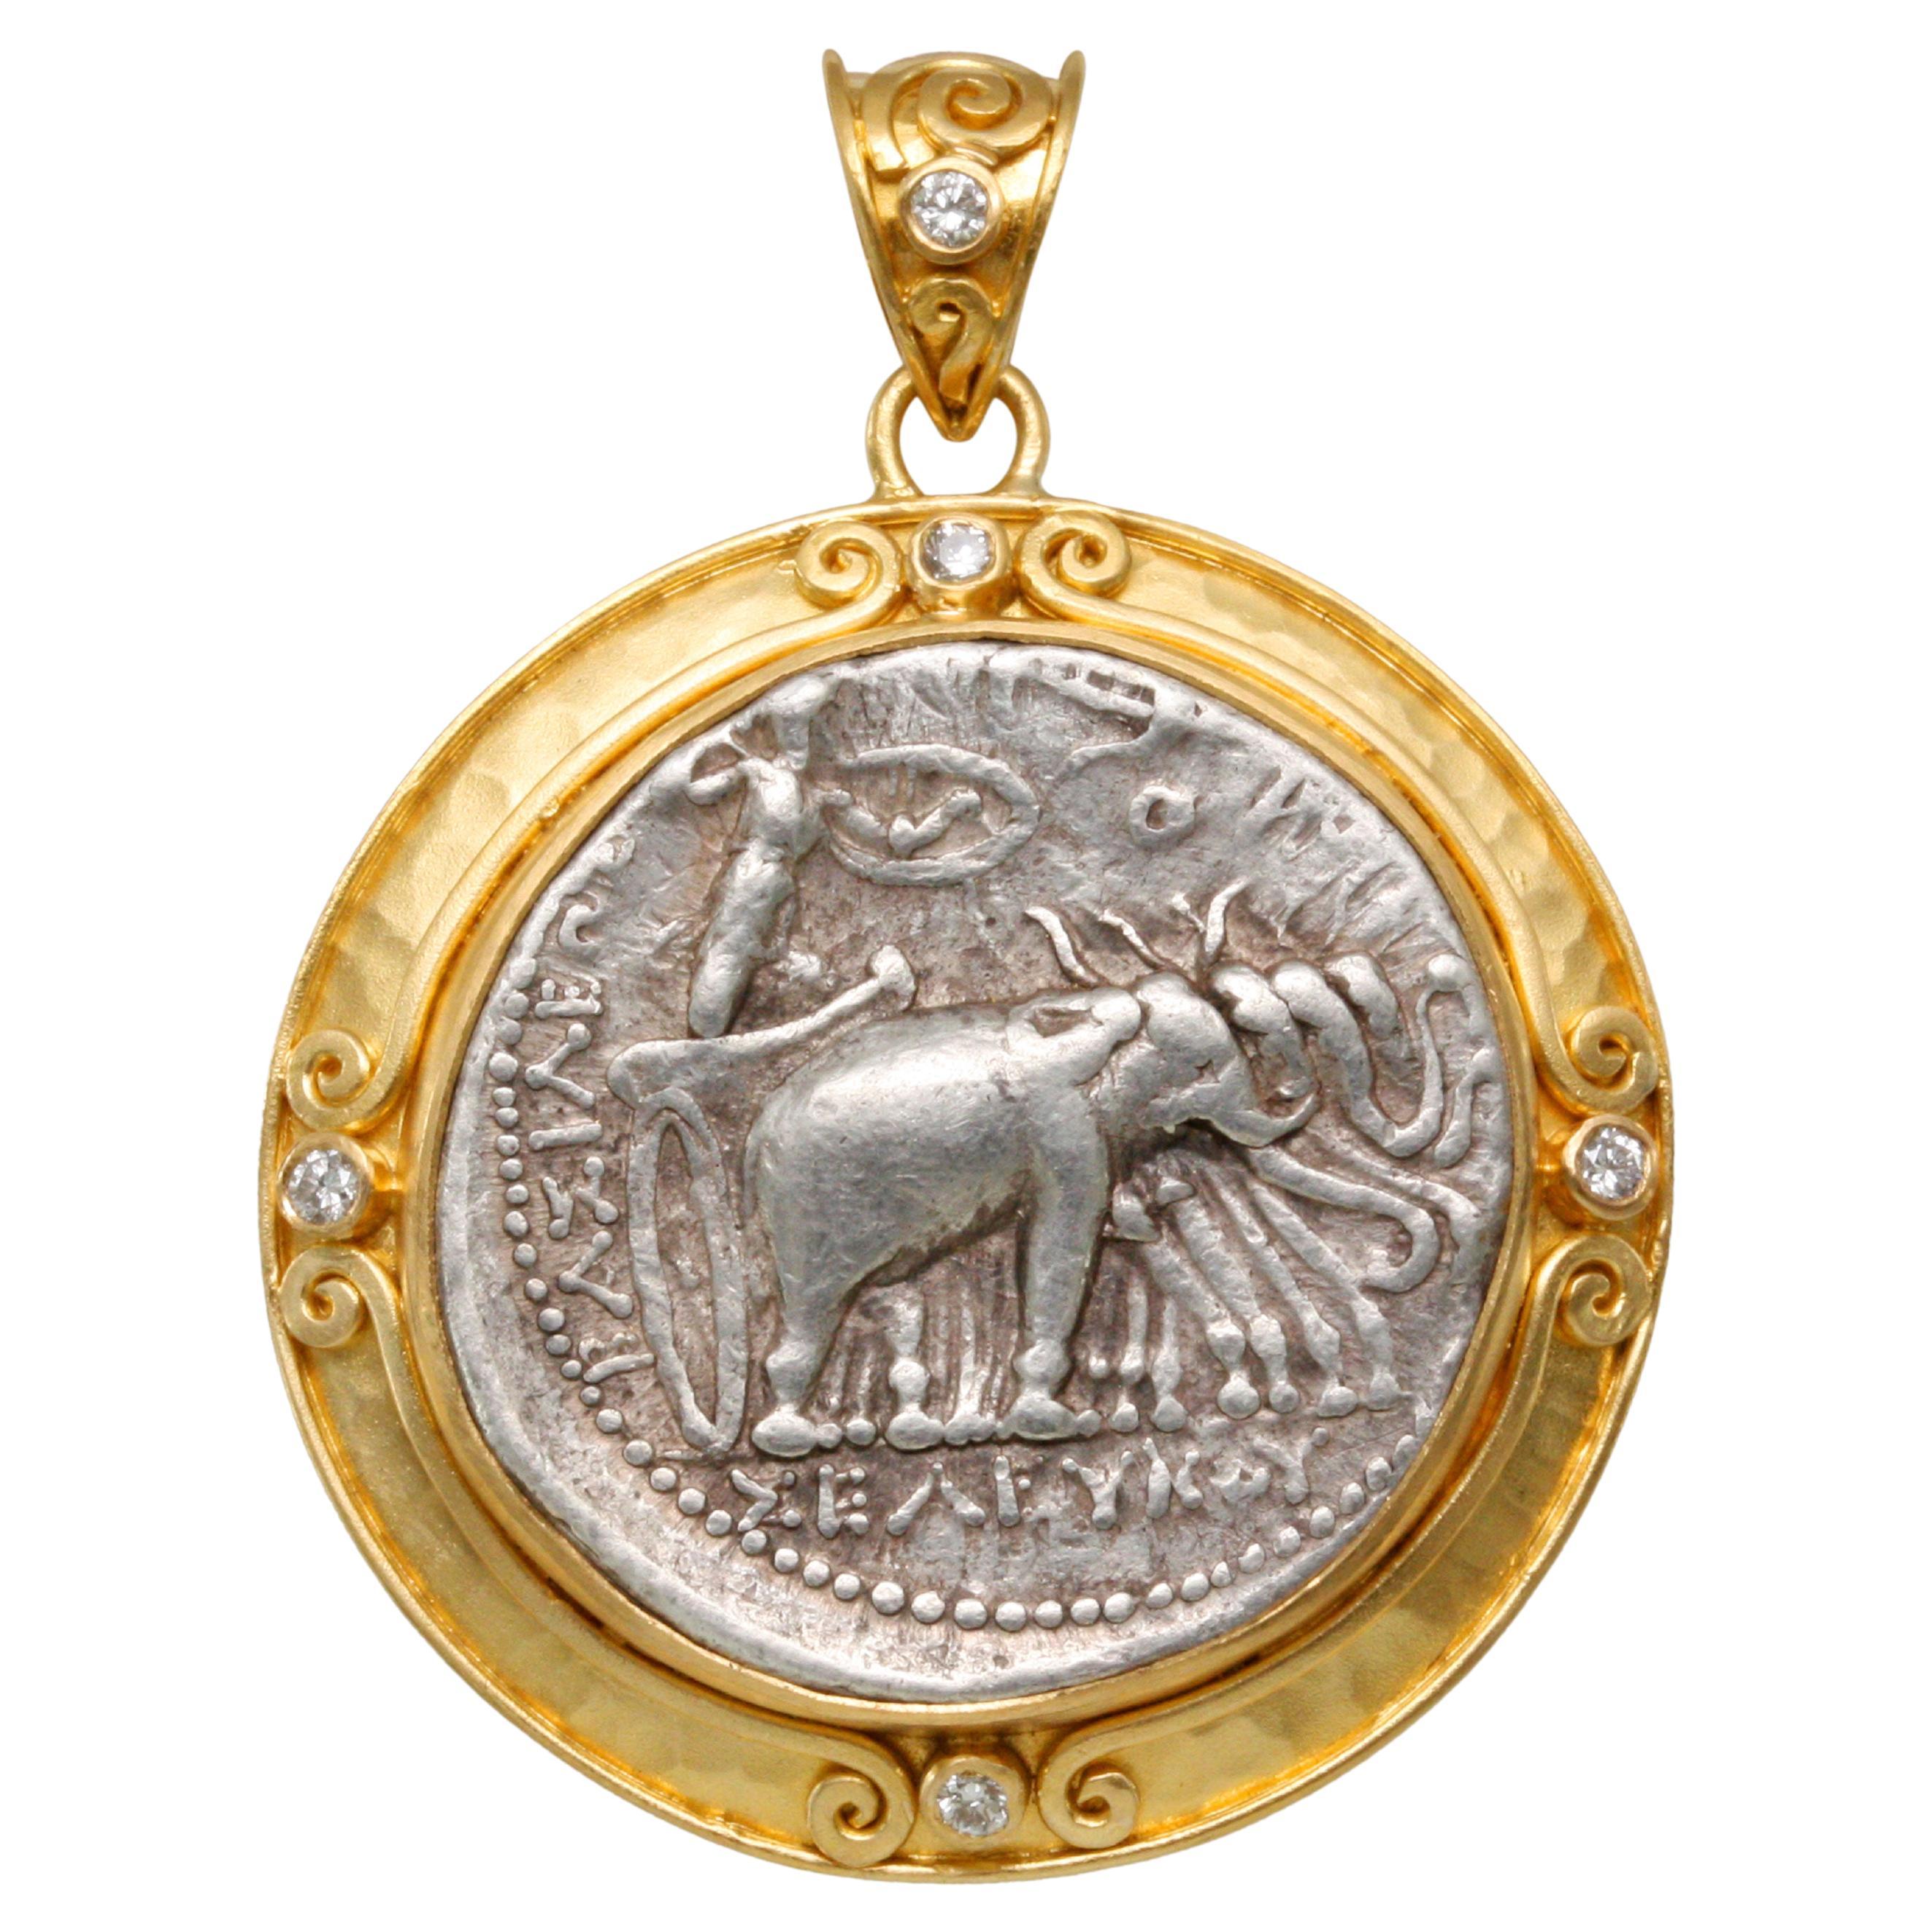 Pendentif en or 22 carats et diamants représentant une pièce de monnaie grecque alexandrite du 3e siècle avant J.-C. 